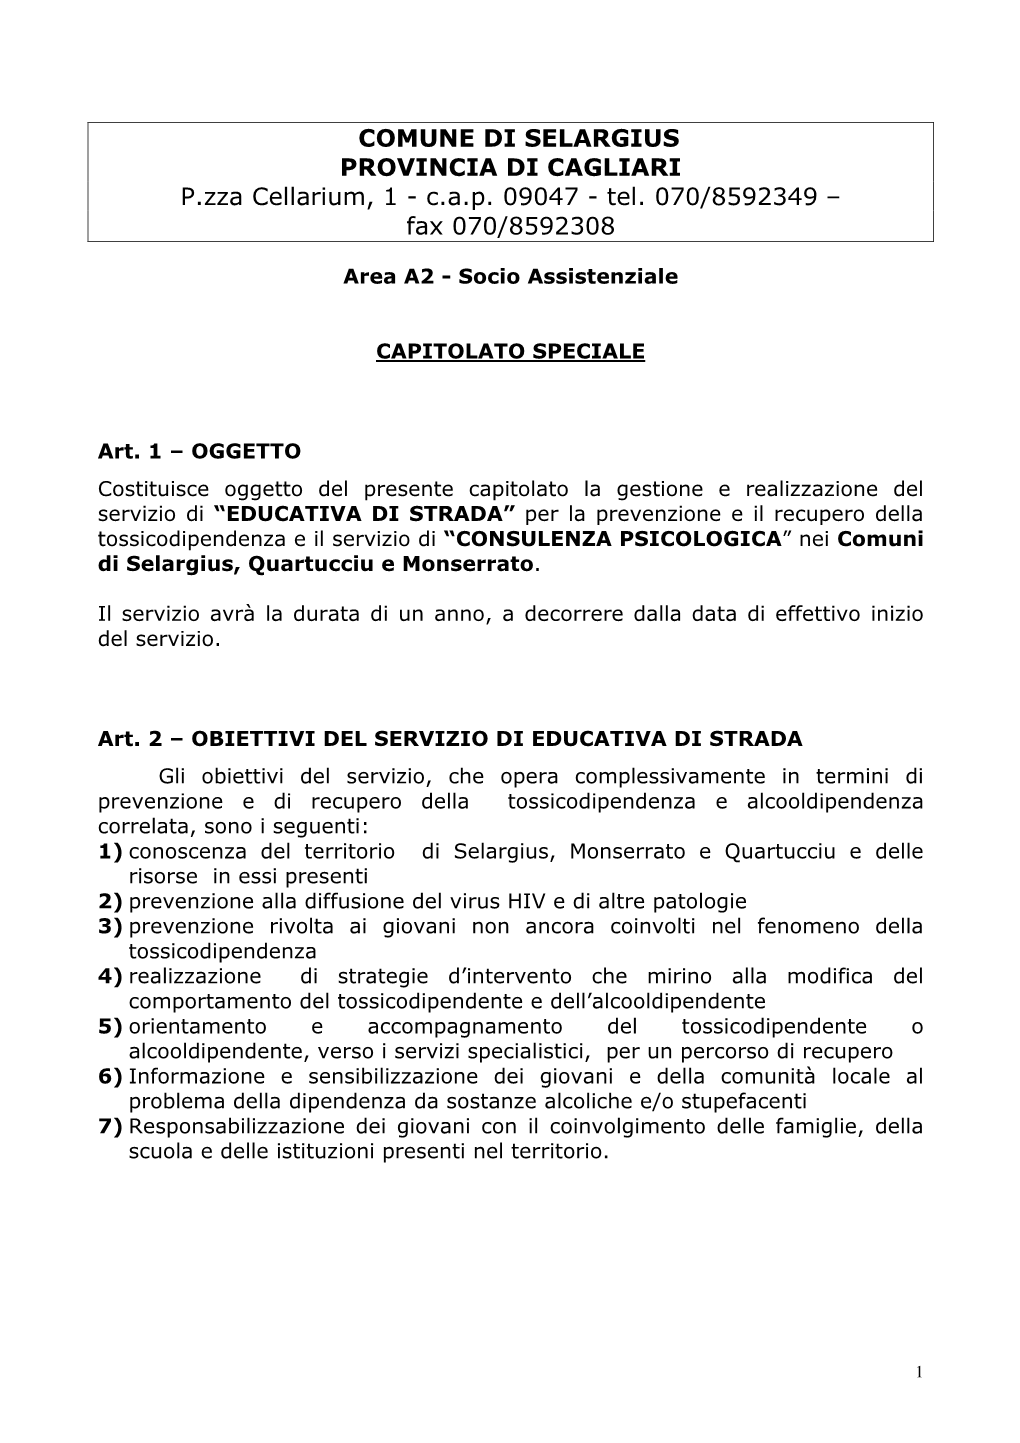 COMUNE DI SELARGIUS PROVINCIA DI CAGLIARI P.Zza Cellarium, 1 - C.A.P